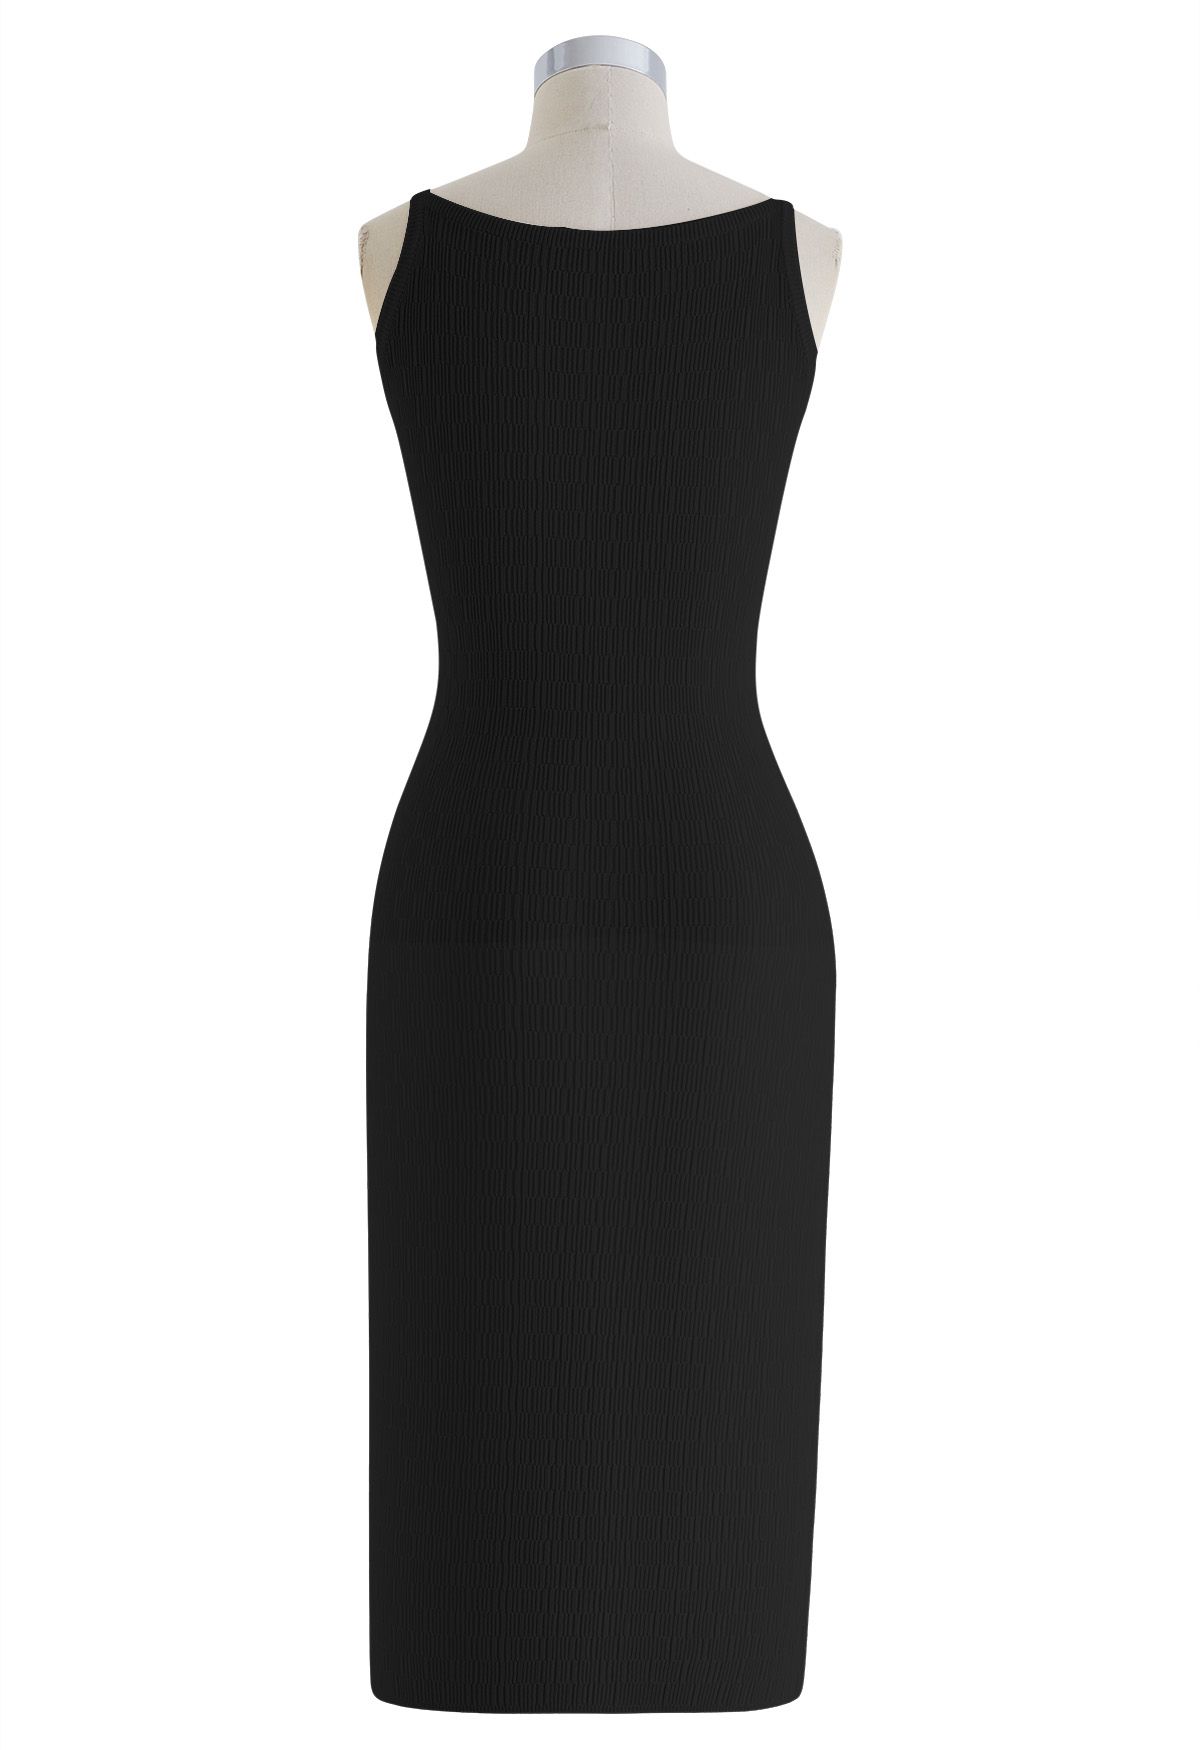 Einfarbiges, strukturiertes Cami-Kleid aus Strick in Schwarz